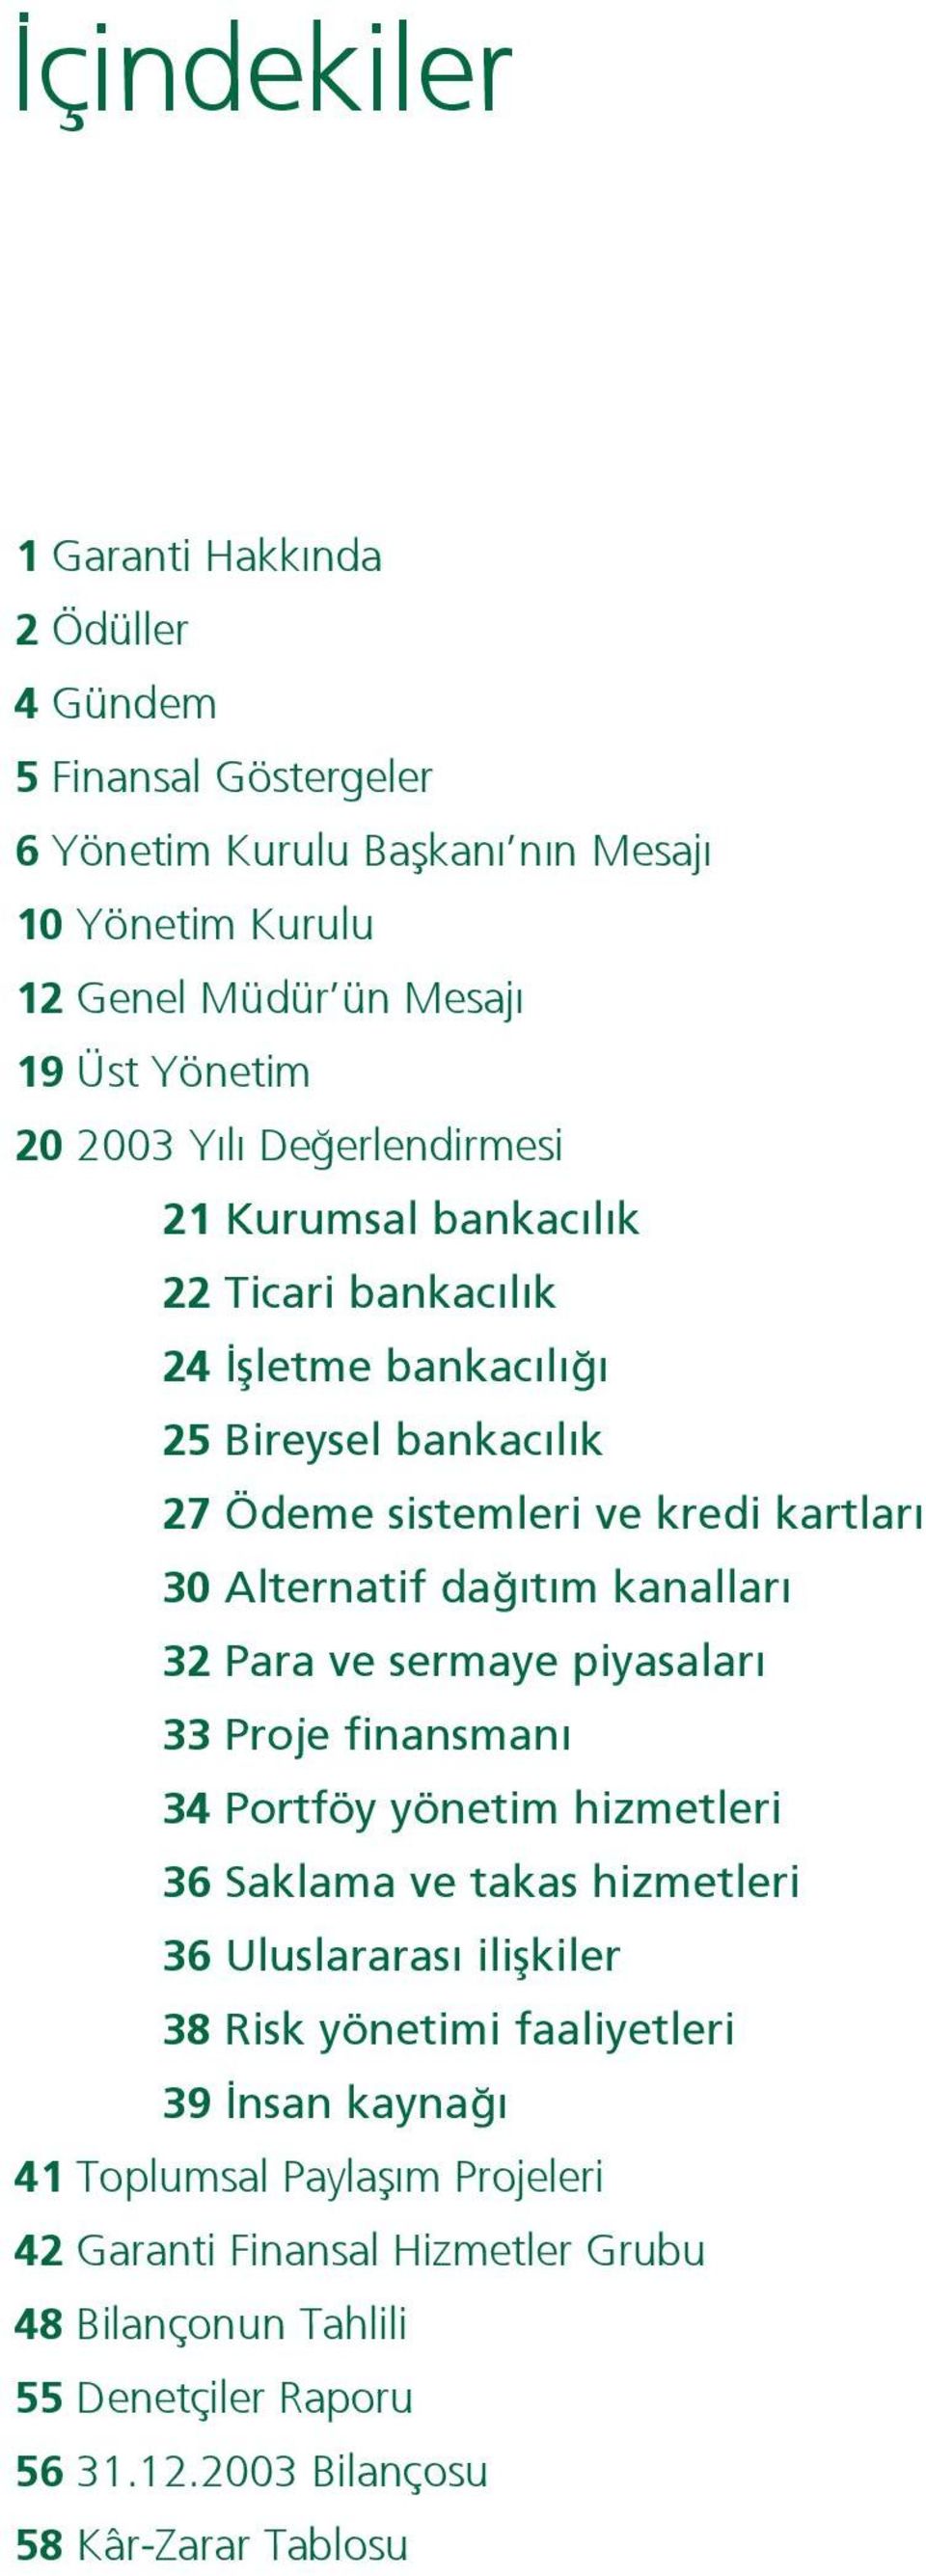 kanallar 32 Para ve sermaye piyasalar 33 Proje finansman 34 Portföy yönetim hizmetleri 36 Saklama ve takas hizmetleri 36 Uluslararas iliflkiler 38 Risk yönetimi